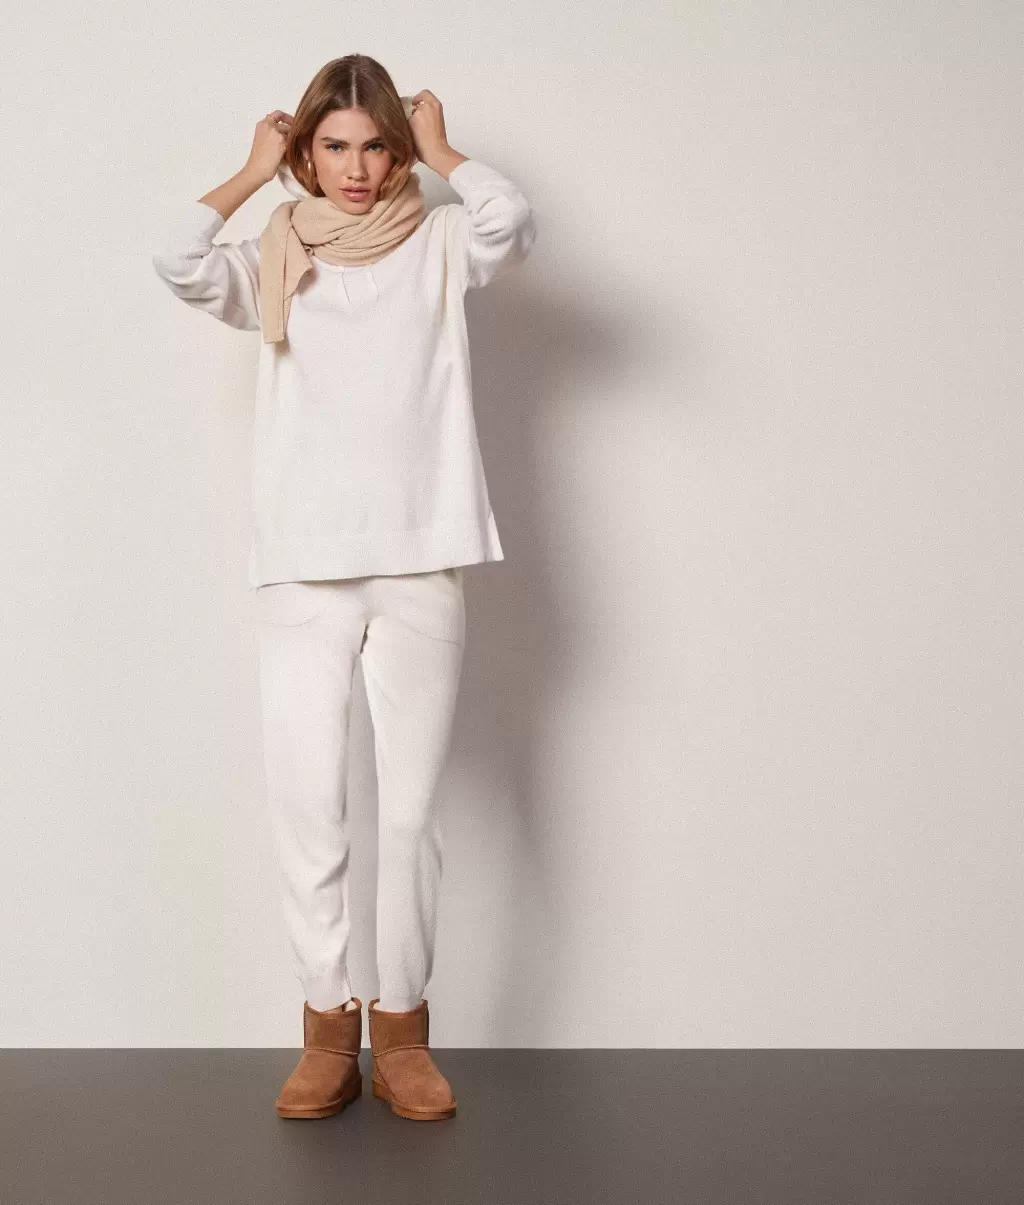 White Długa Bluza Z Kapturem Z Kaszmiru Ultrasoft Falconeri Swetry Z Okrągłym Dekoltem Kobieta